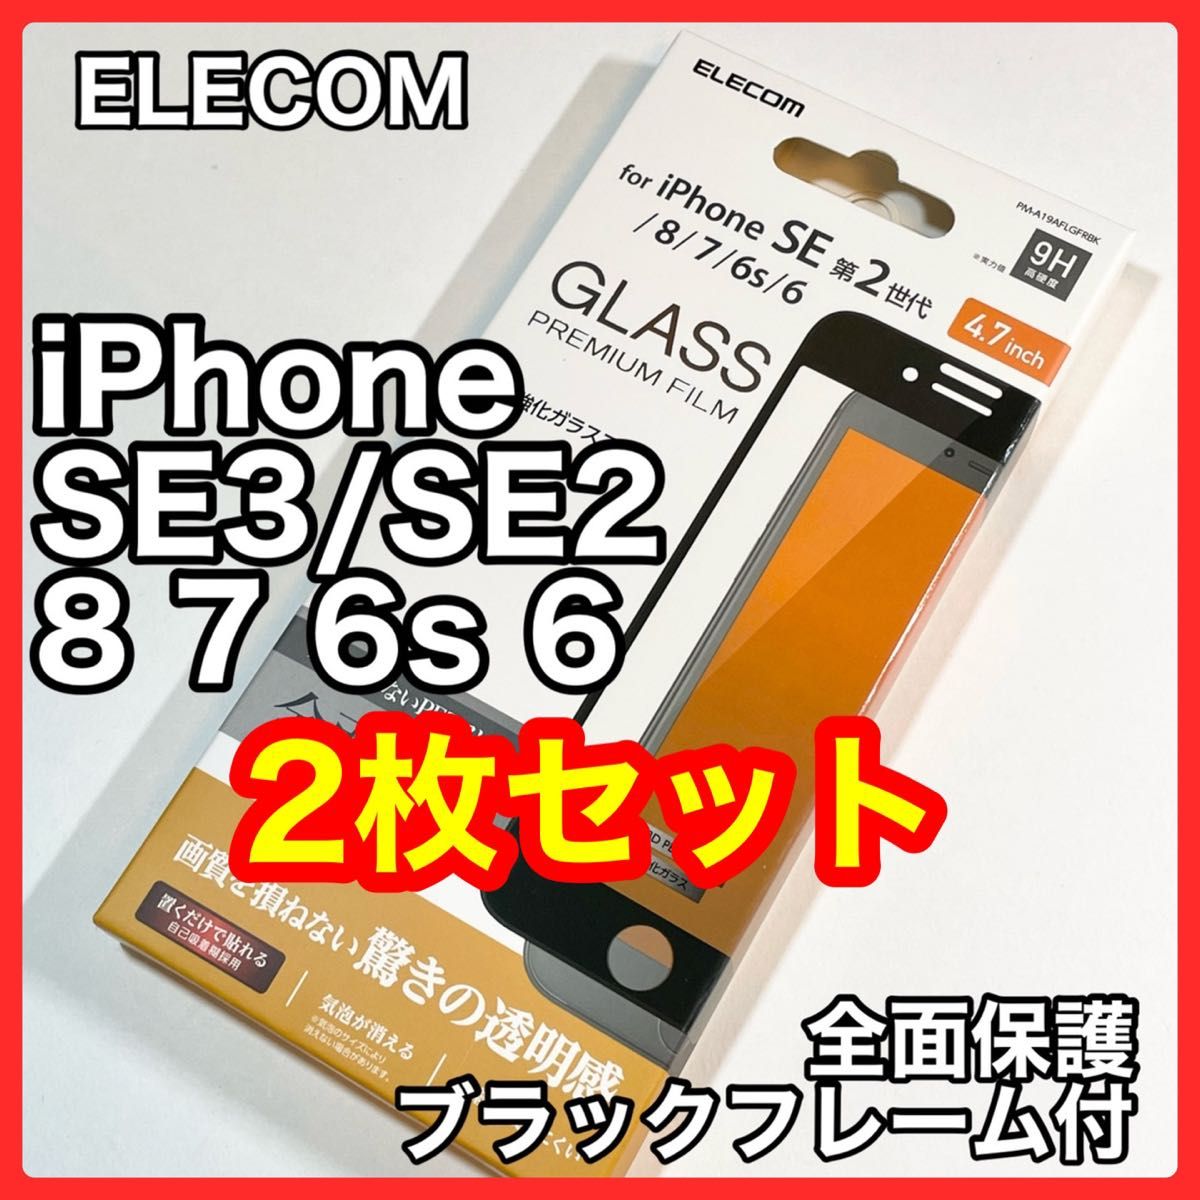 エレコムiPhoneSE3/SE2/8/7/6s/6フルカバーガラスフィルム